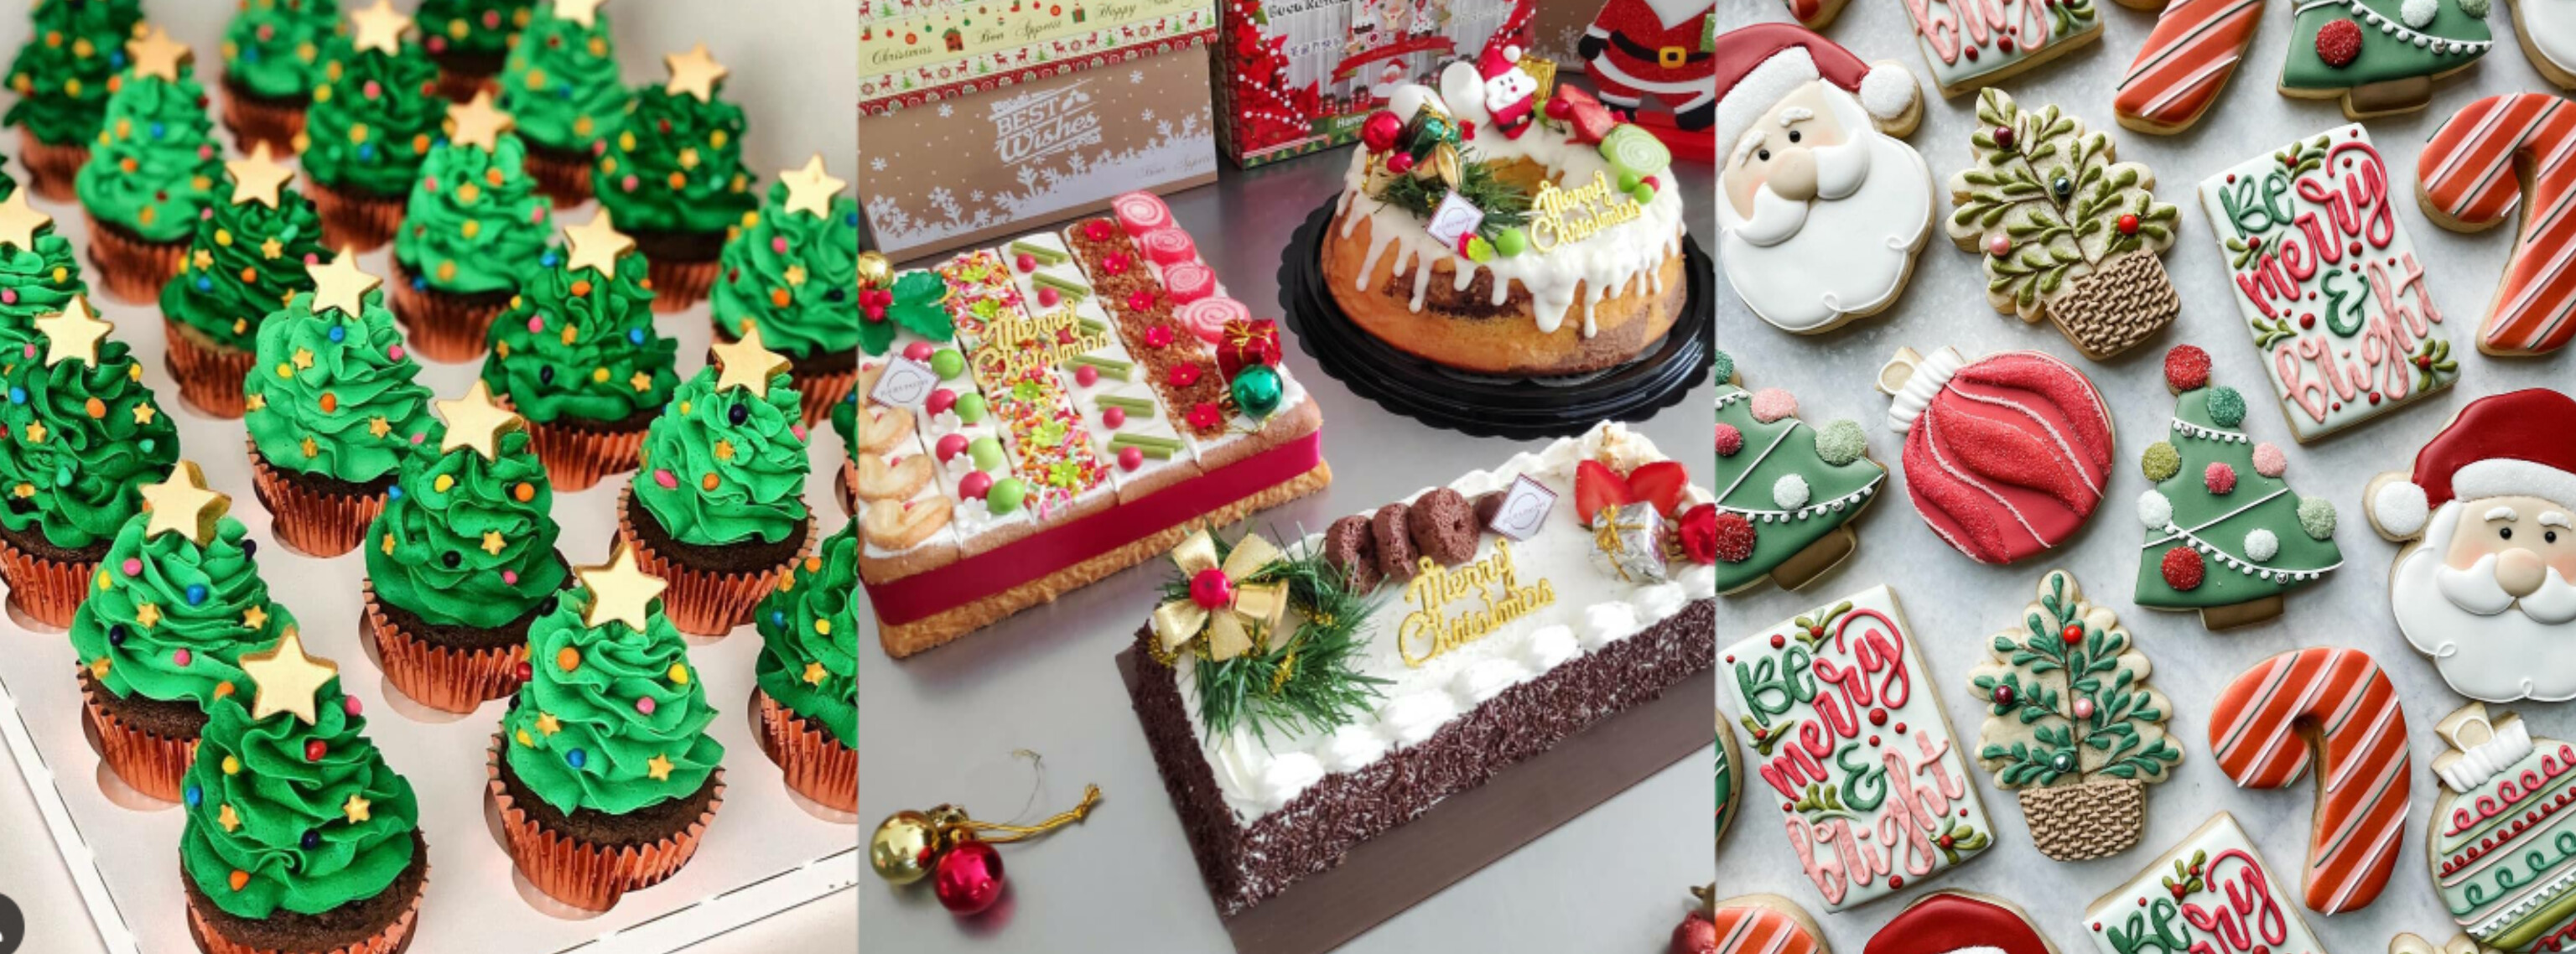 Yuk Intip Resep Kue Natal Simpel dan Pastinya Lezat, Mudah Sekali DIbuat di Rumah dengan Bahan yang Sederhana